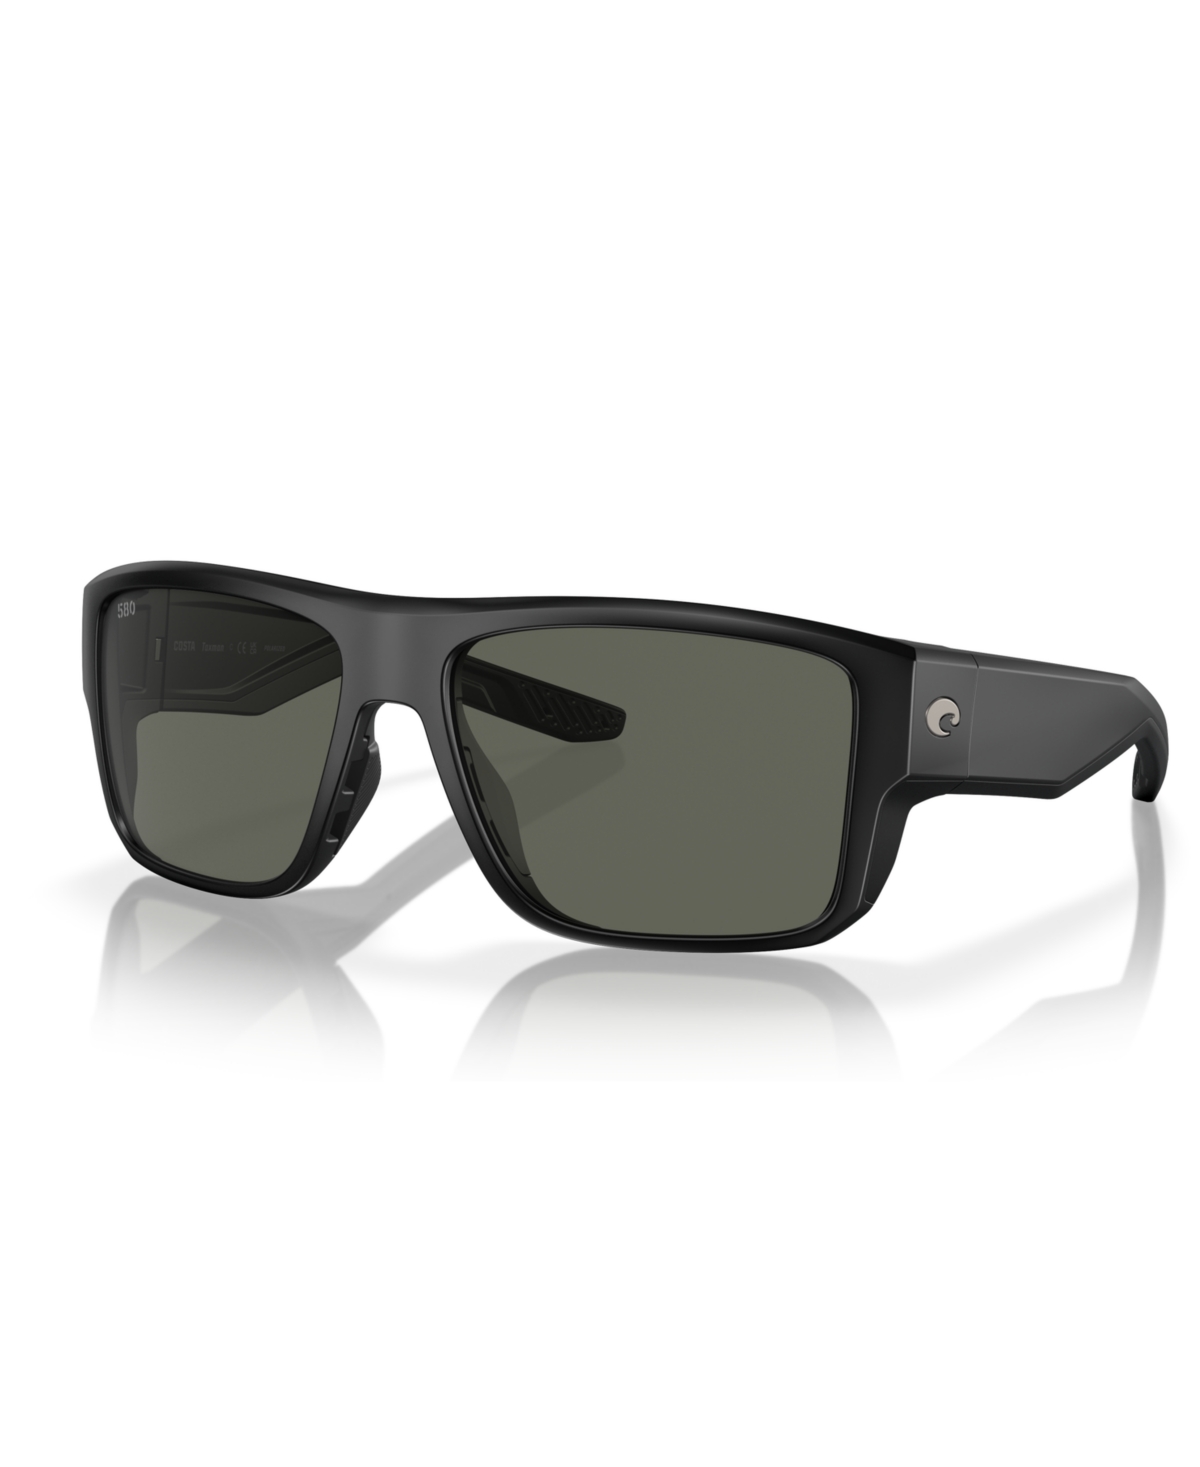 Costa Del Mar Men's Polarized Sunglasses, Taxman 6s9116 In Matte Black